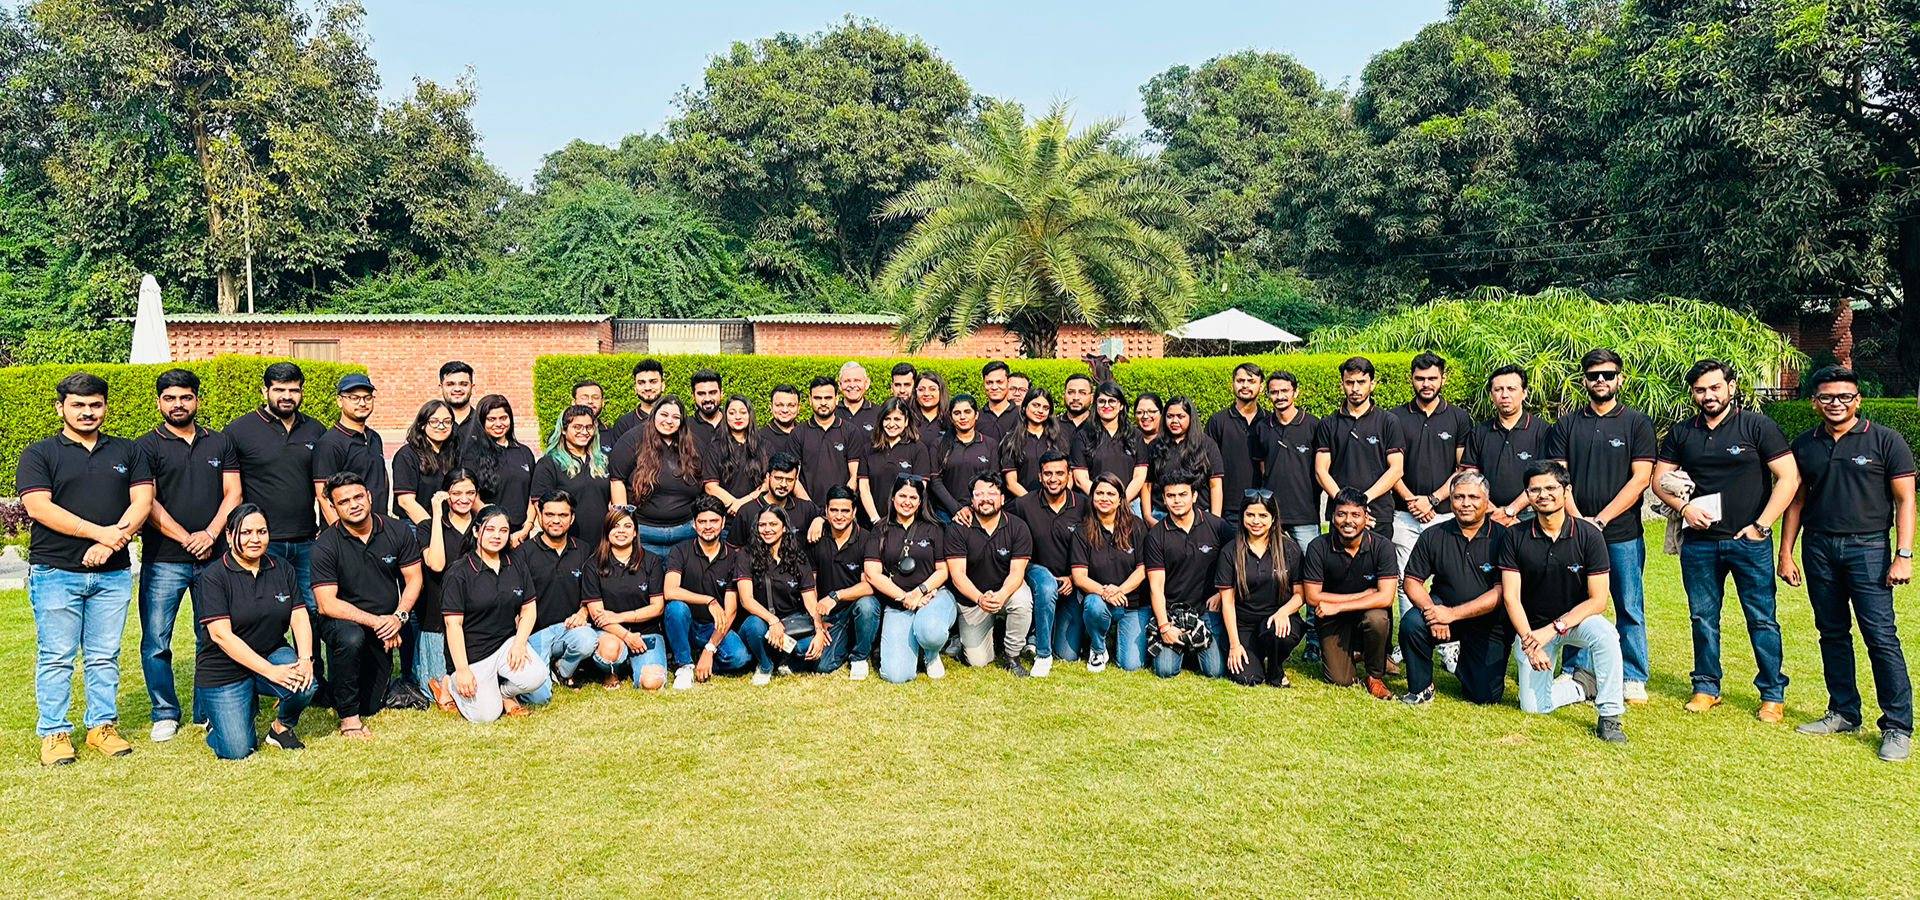 Gruppenbild des indischen Magic Billion-Teams auf einer Wiese vor begrüntem Hintergrund